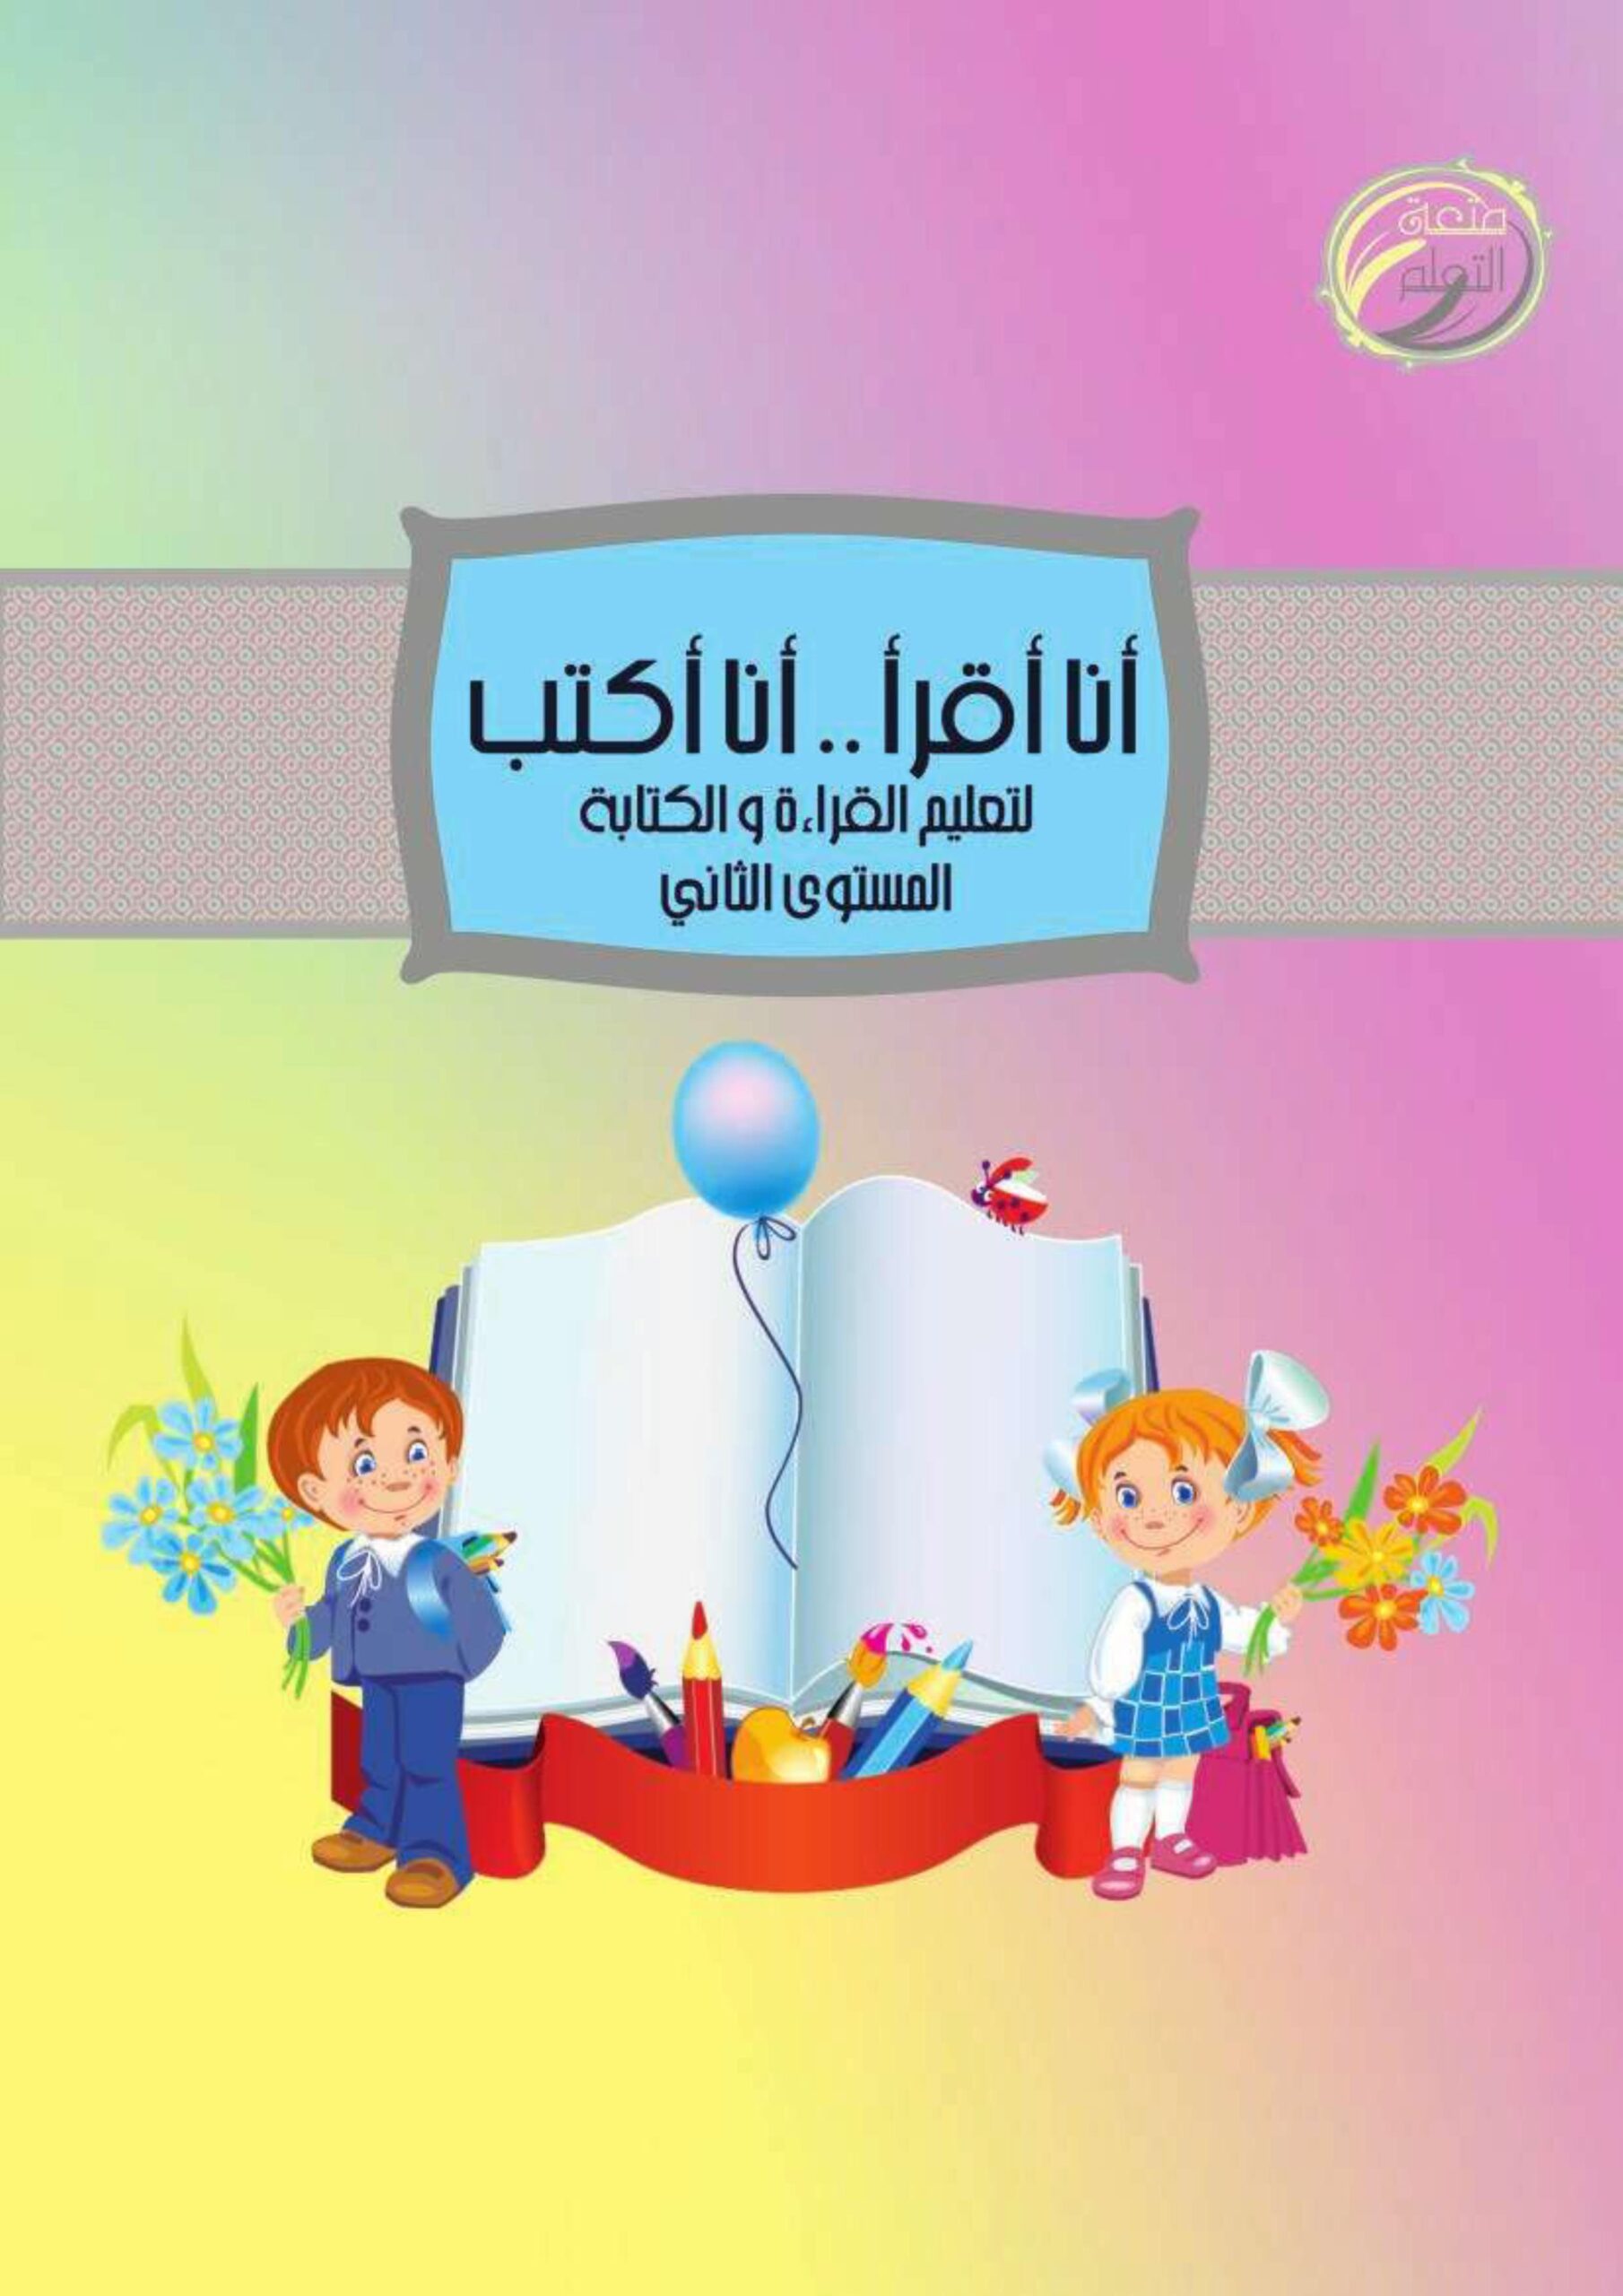 موسوعة أنا أقرأ  وأنا أكتب لتعليم القراءة والكتابة المستوى الثاني اللغة العربية الصف الأول 